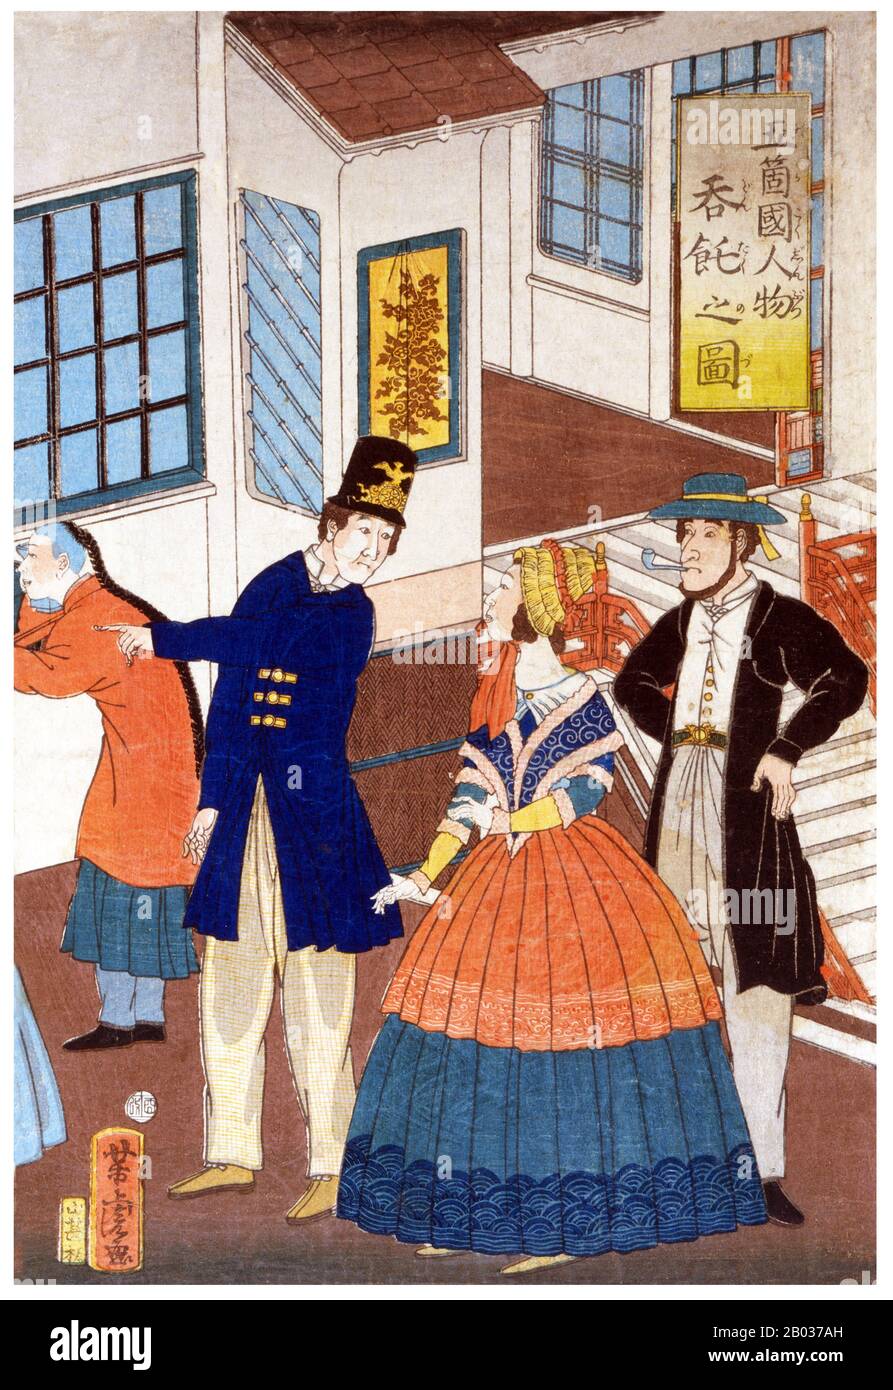 L'imprimé triptyque japonais montre l'intérieur d'une maison d'établissement étrangère avec plusieurs femmes et hommes bénéficiant d'une fête du thé, et une vue sur les navires dans le port en arrière-plan, Yokohama, Japon. Utagawa Yoshitora était un concepteur de gravures japonaises sur bois ukiyo-e et un illustrateur de livres et de journaux qui était actif d'environ 1850 à environ 1880. Il est né à Edo (Tokyo moderne), mais ni sa date de naissance ni sa date de mort ne sont connues. Il a été le plus ancien élève d'Utagawa Kuniyoshi qui a excellé dans des reproductions de guerriers, d'acteurs kabuki, de belles femmes et d'étrangers (Yokohama-e). Banque D'Images